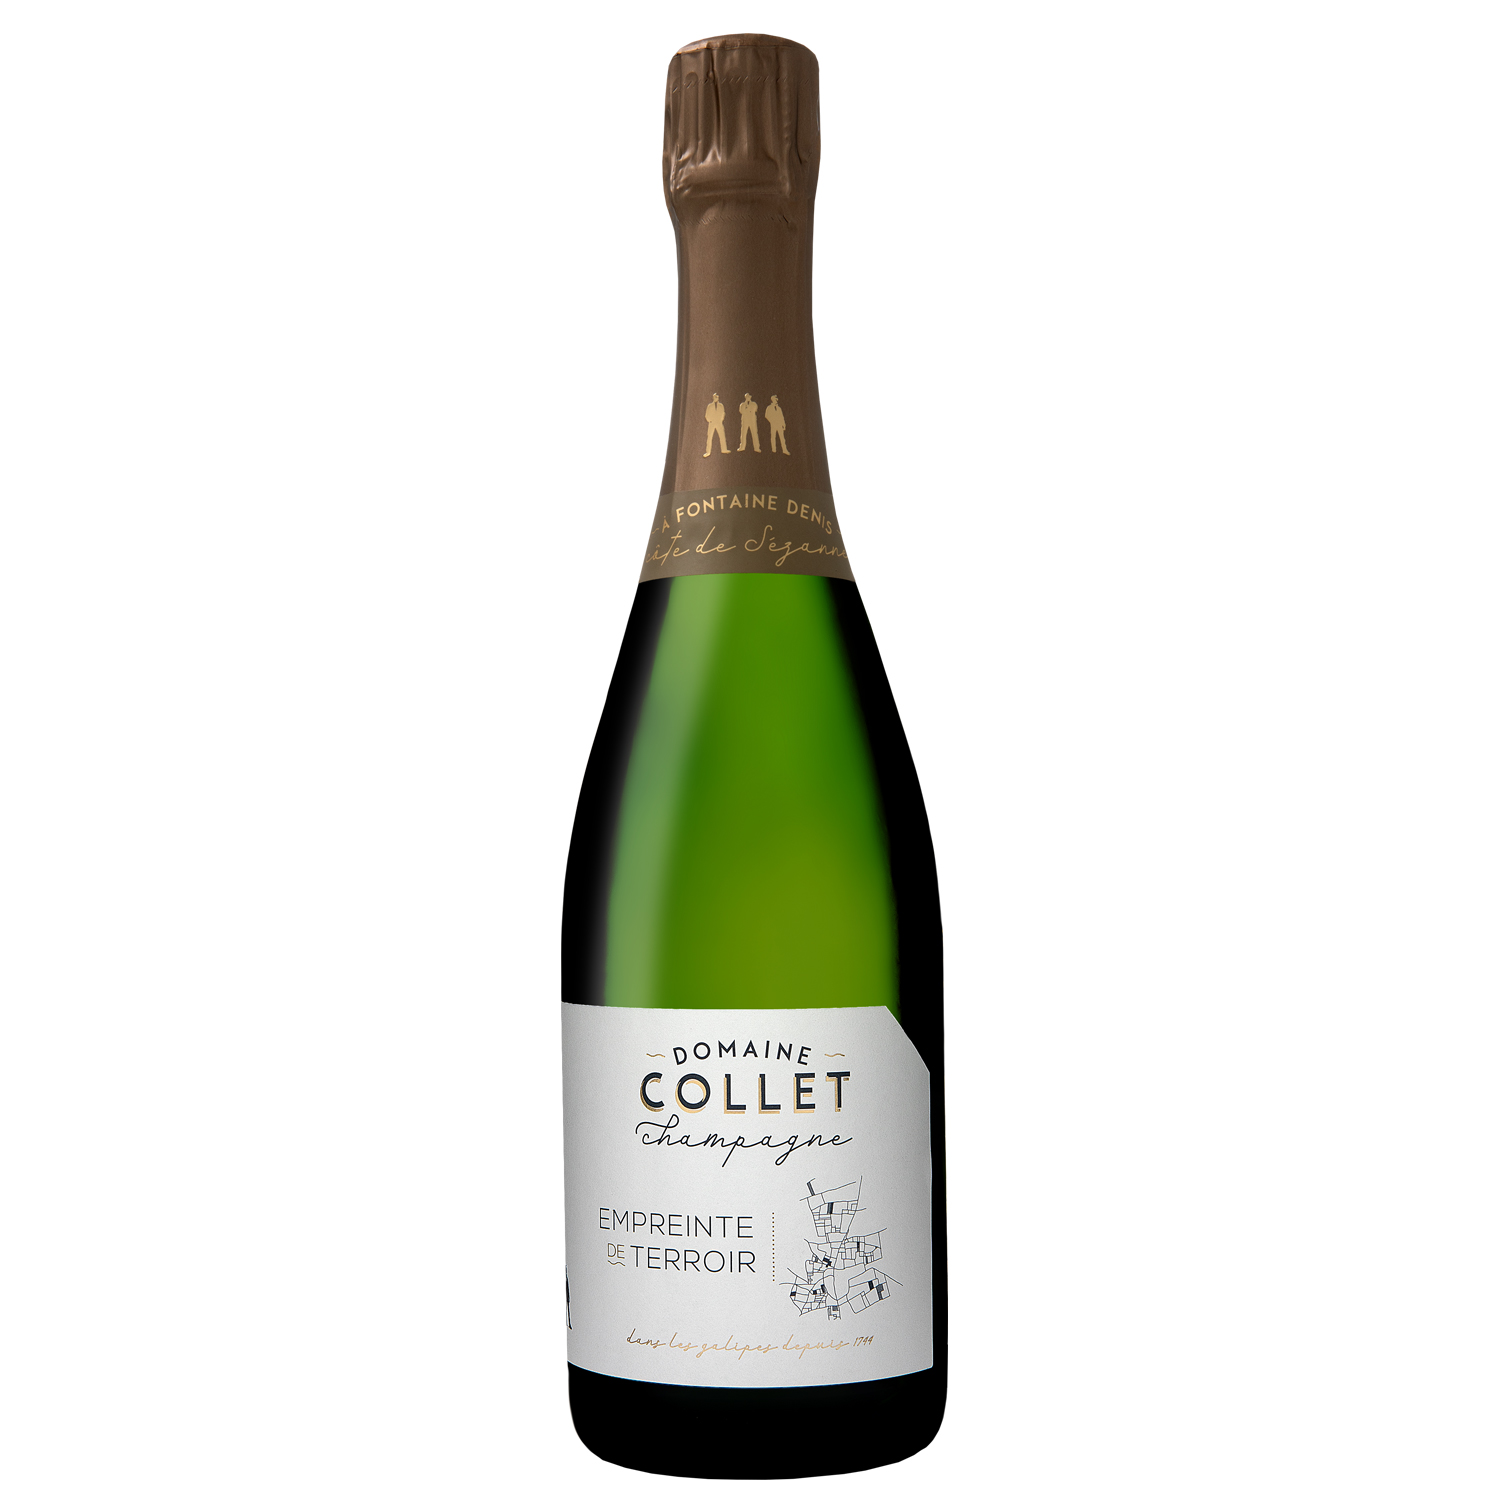 Domaine Collet Champagne: Empreinte de Terroir